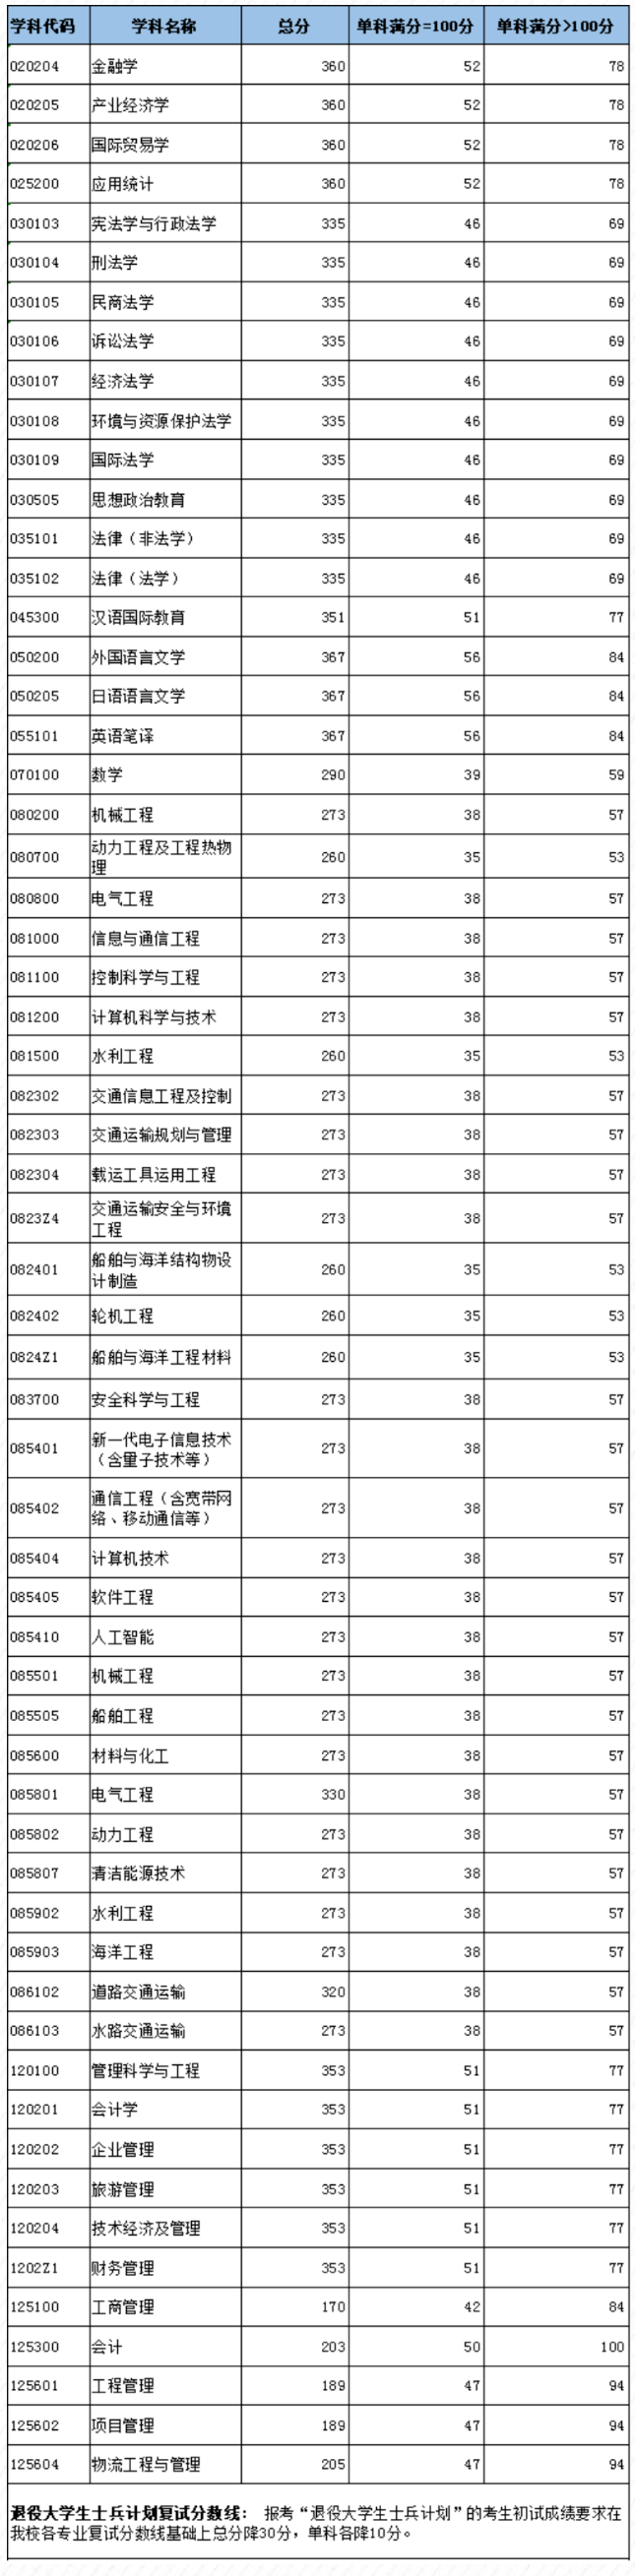 上海海事大学公布2022年硕士研究生招生考试复试分数线